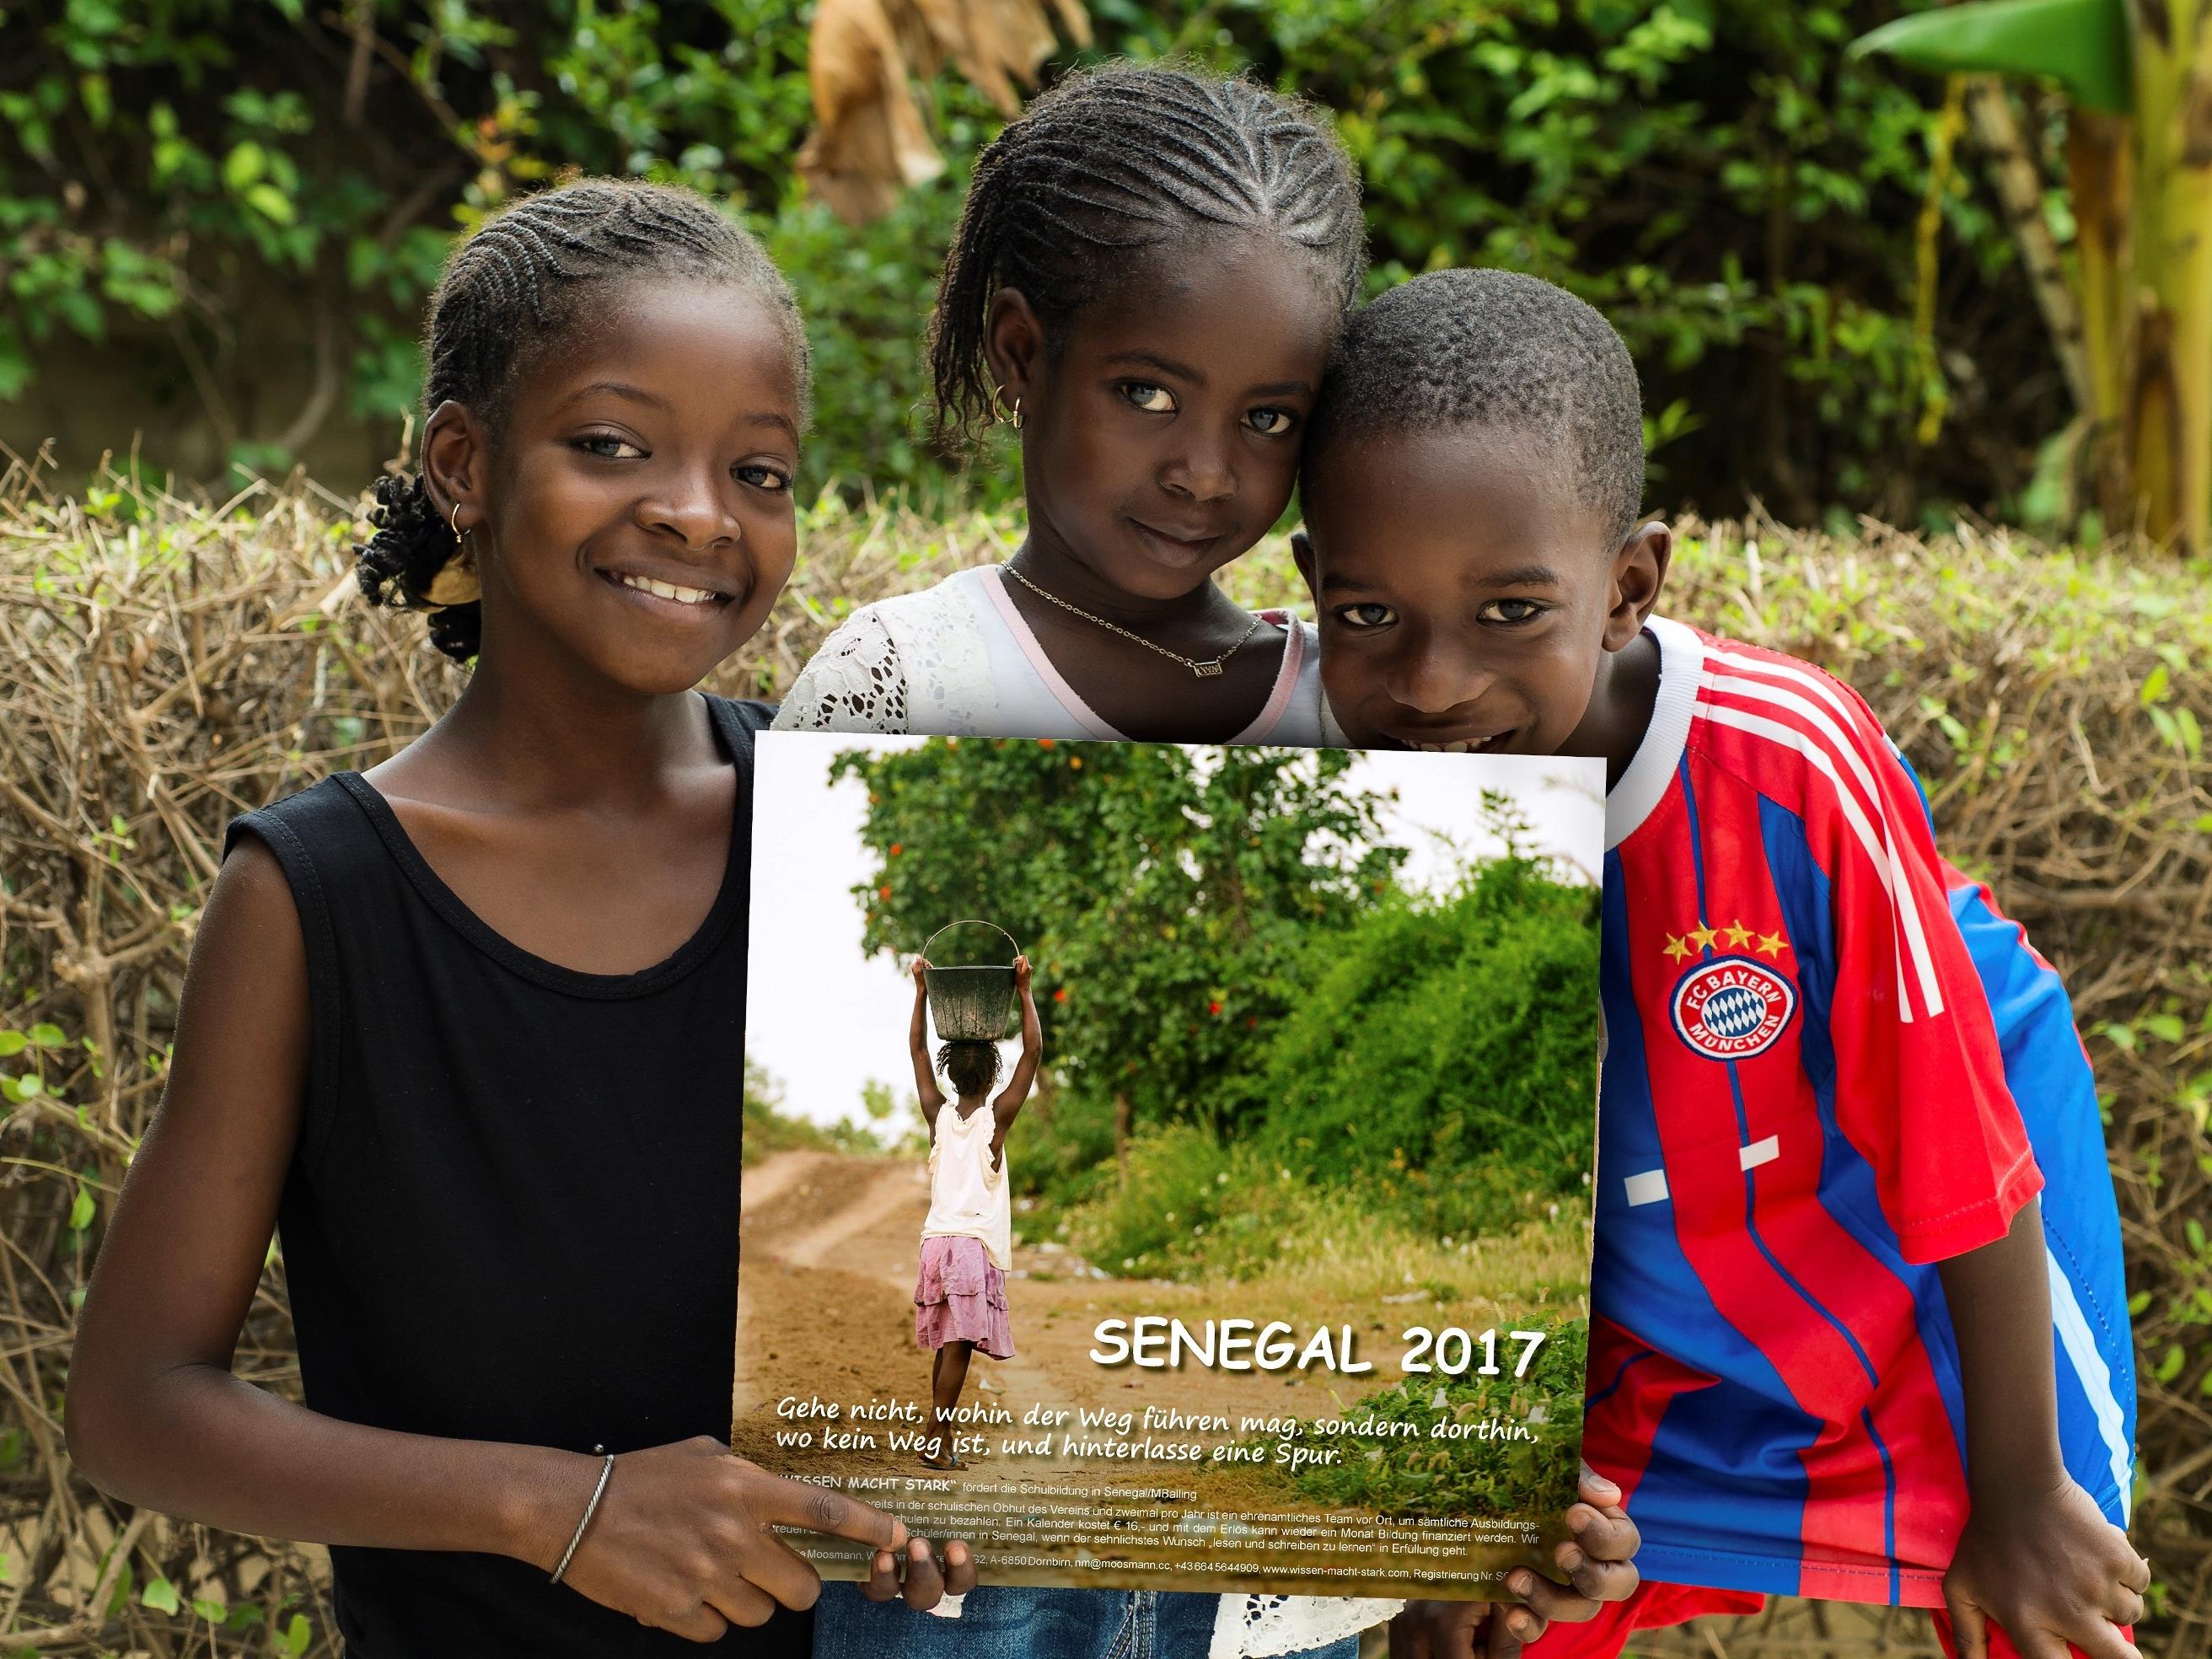 Bei der Aktion kommenden Samstag in der Europapassage ist der neue Senegalkalender erstmals erhältlich.